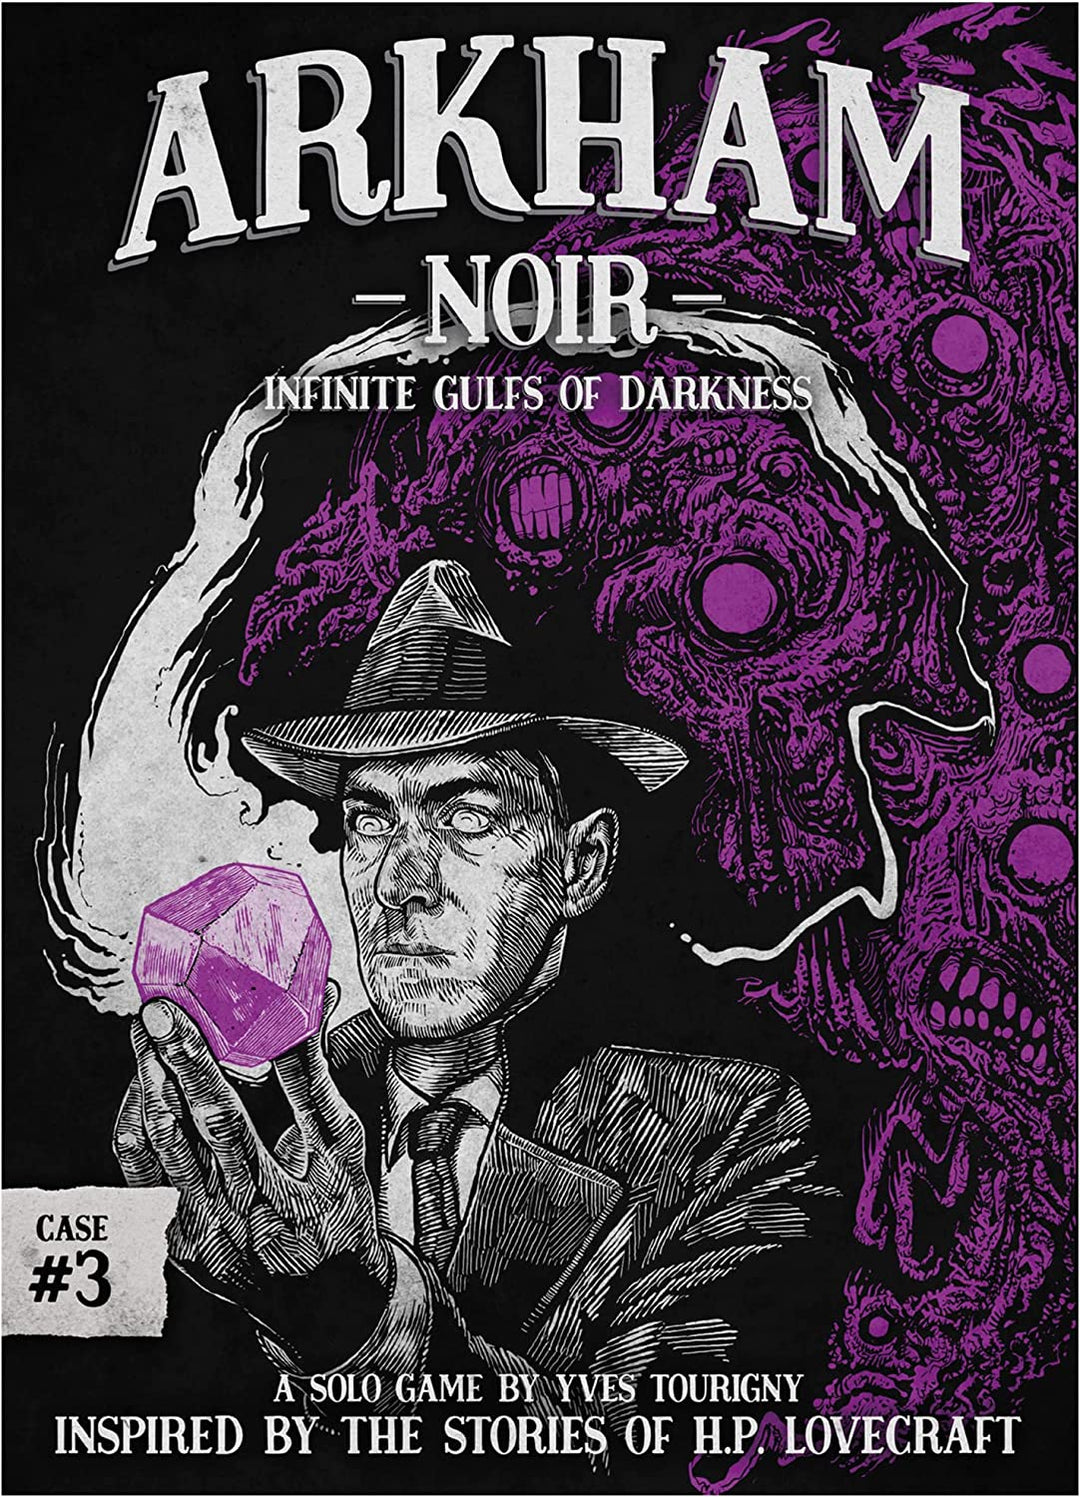 Arkham Noir 3 Infinite Gulfs Of Darkness Ein Solospiel von Yves Tourigny, inspiriert von den Geschichten von HP Lovecraft